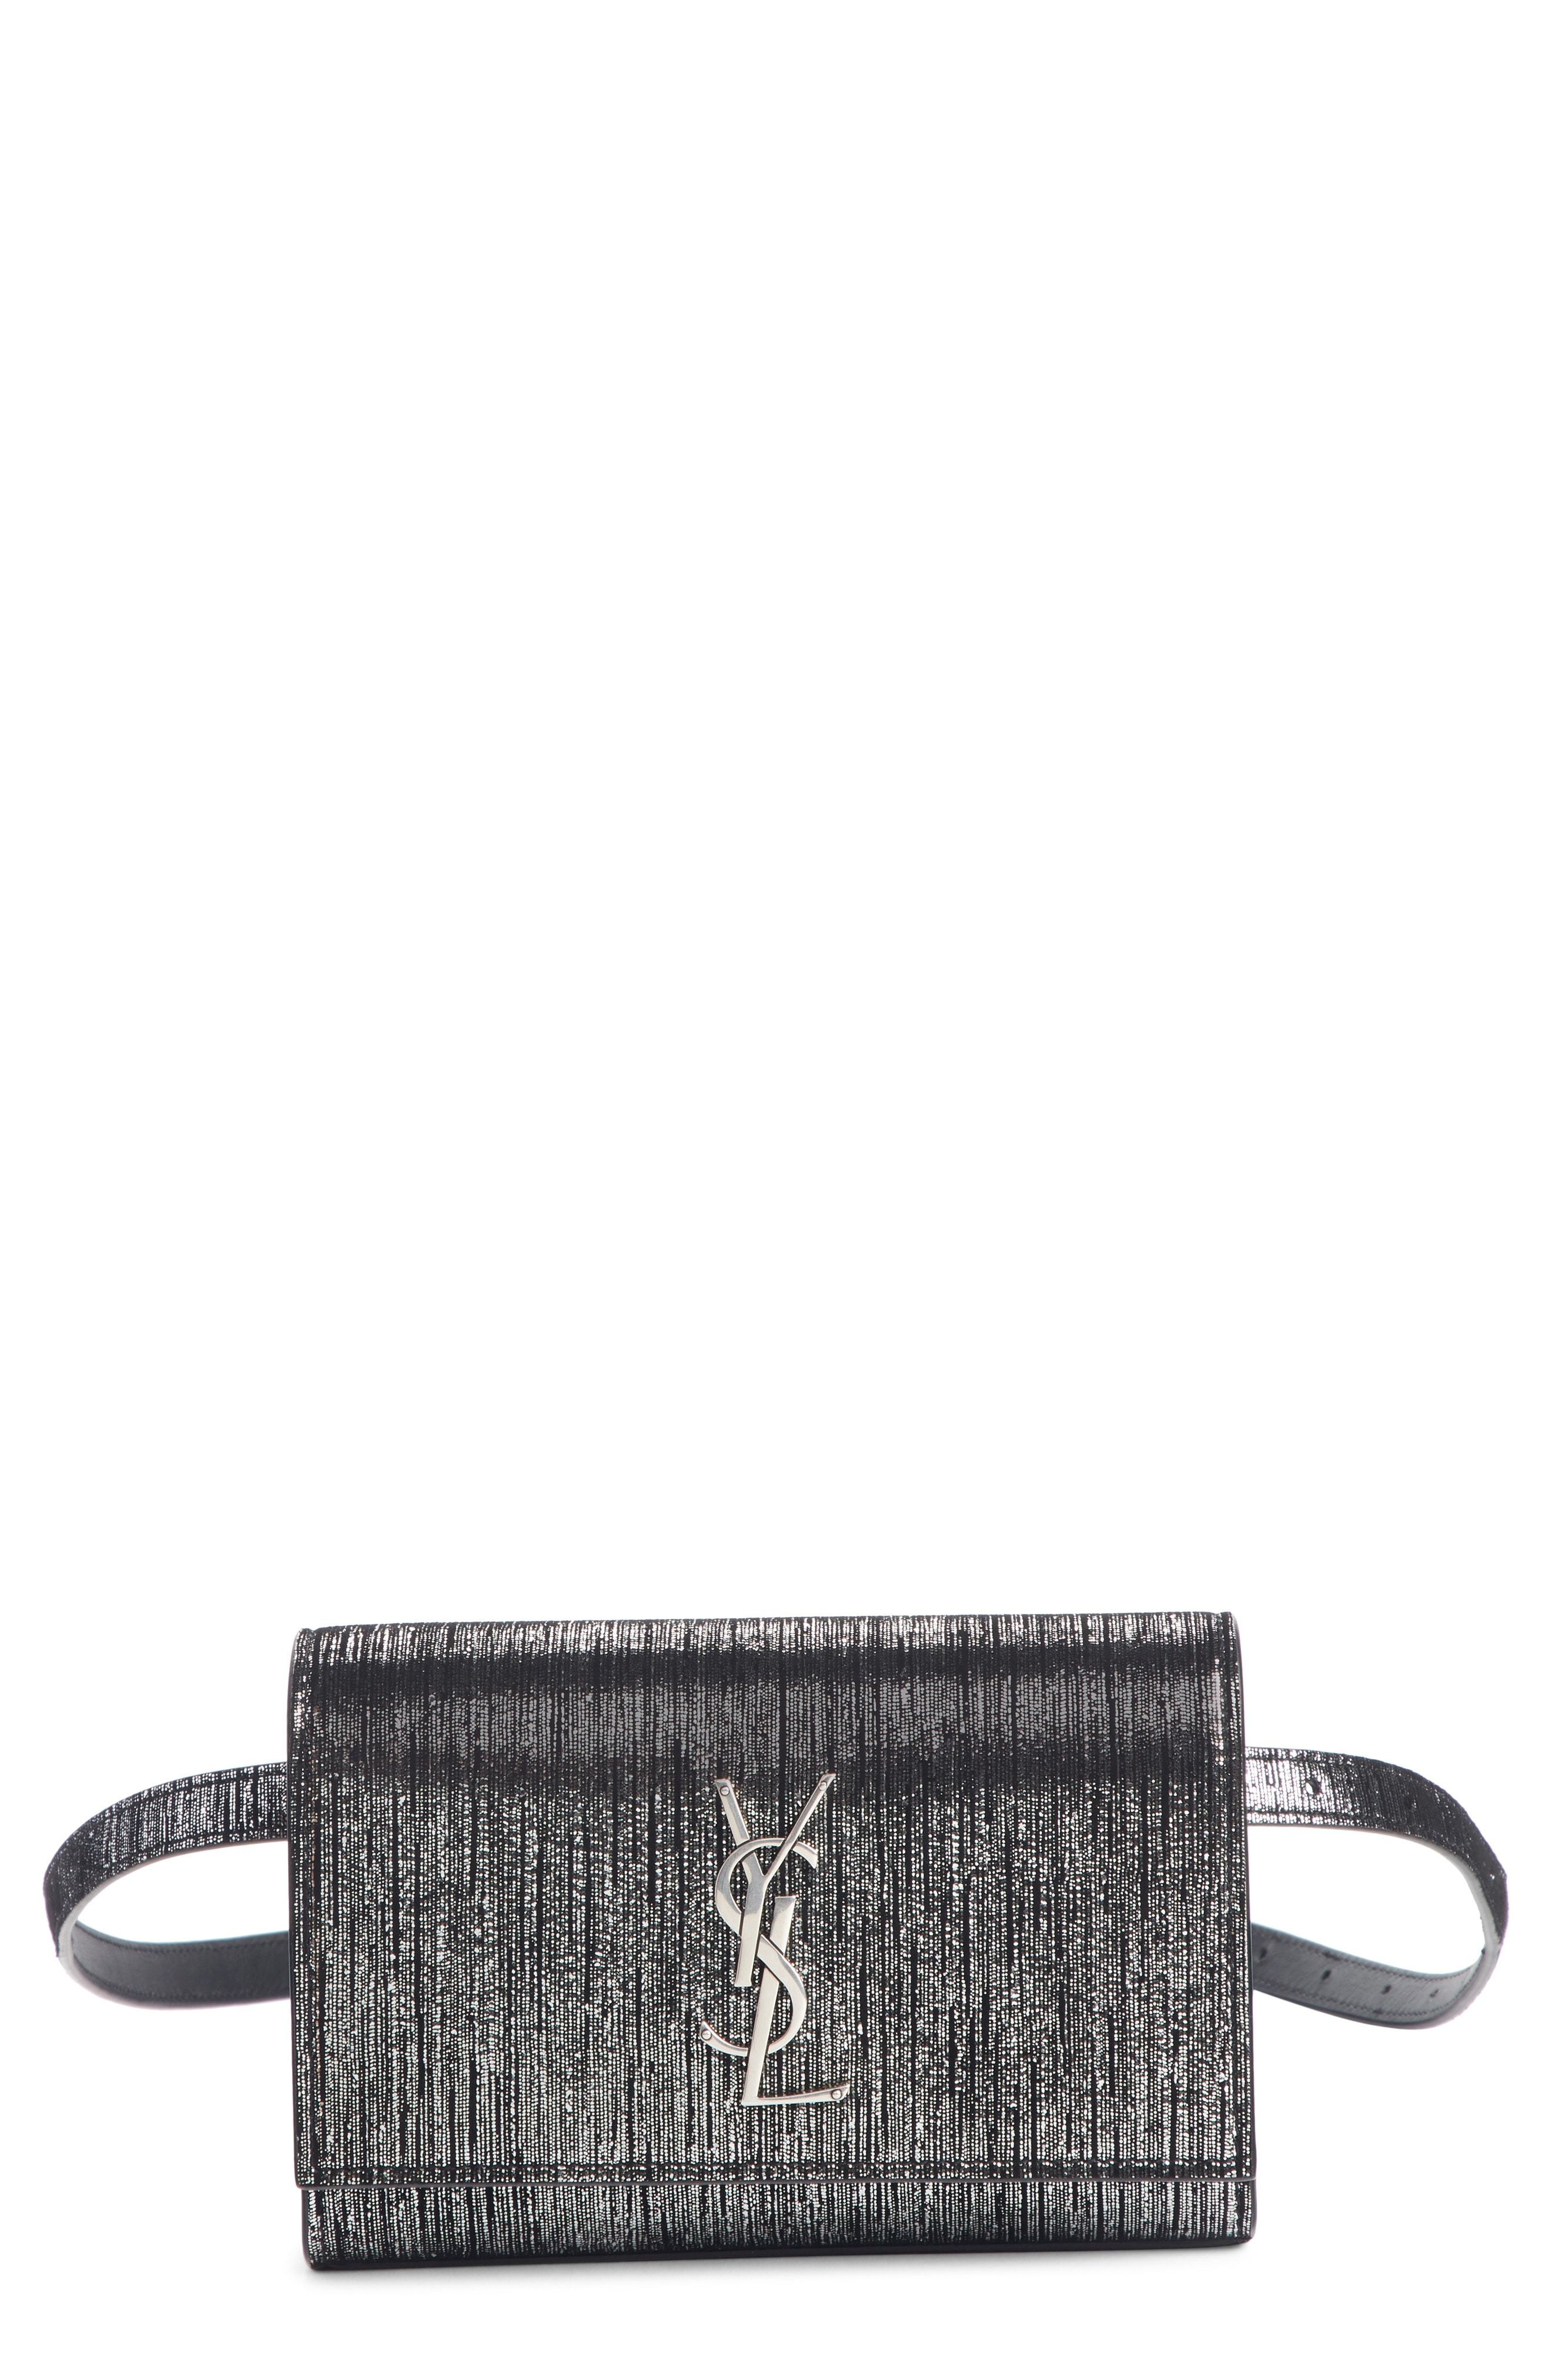 Saint Laurent Kate Leather Belt Bag in Black